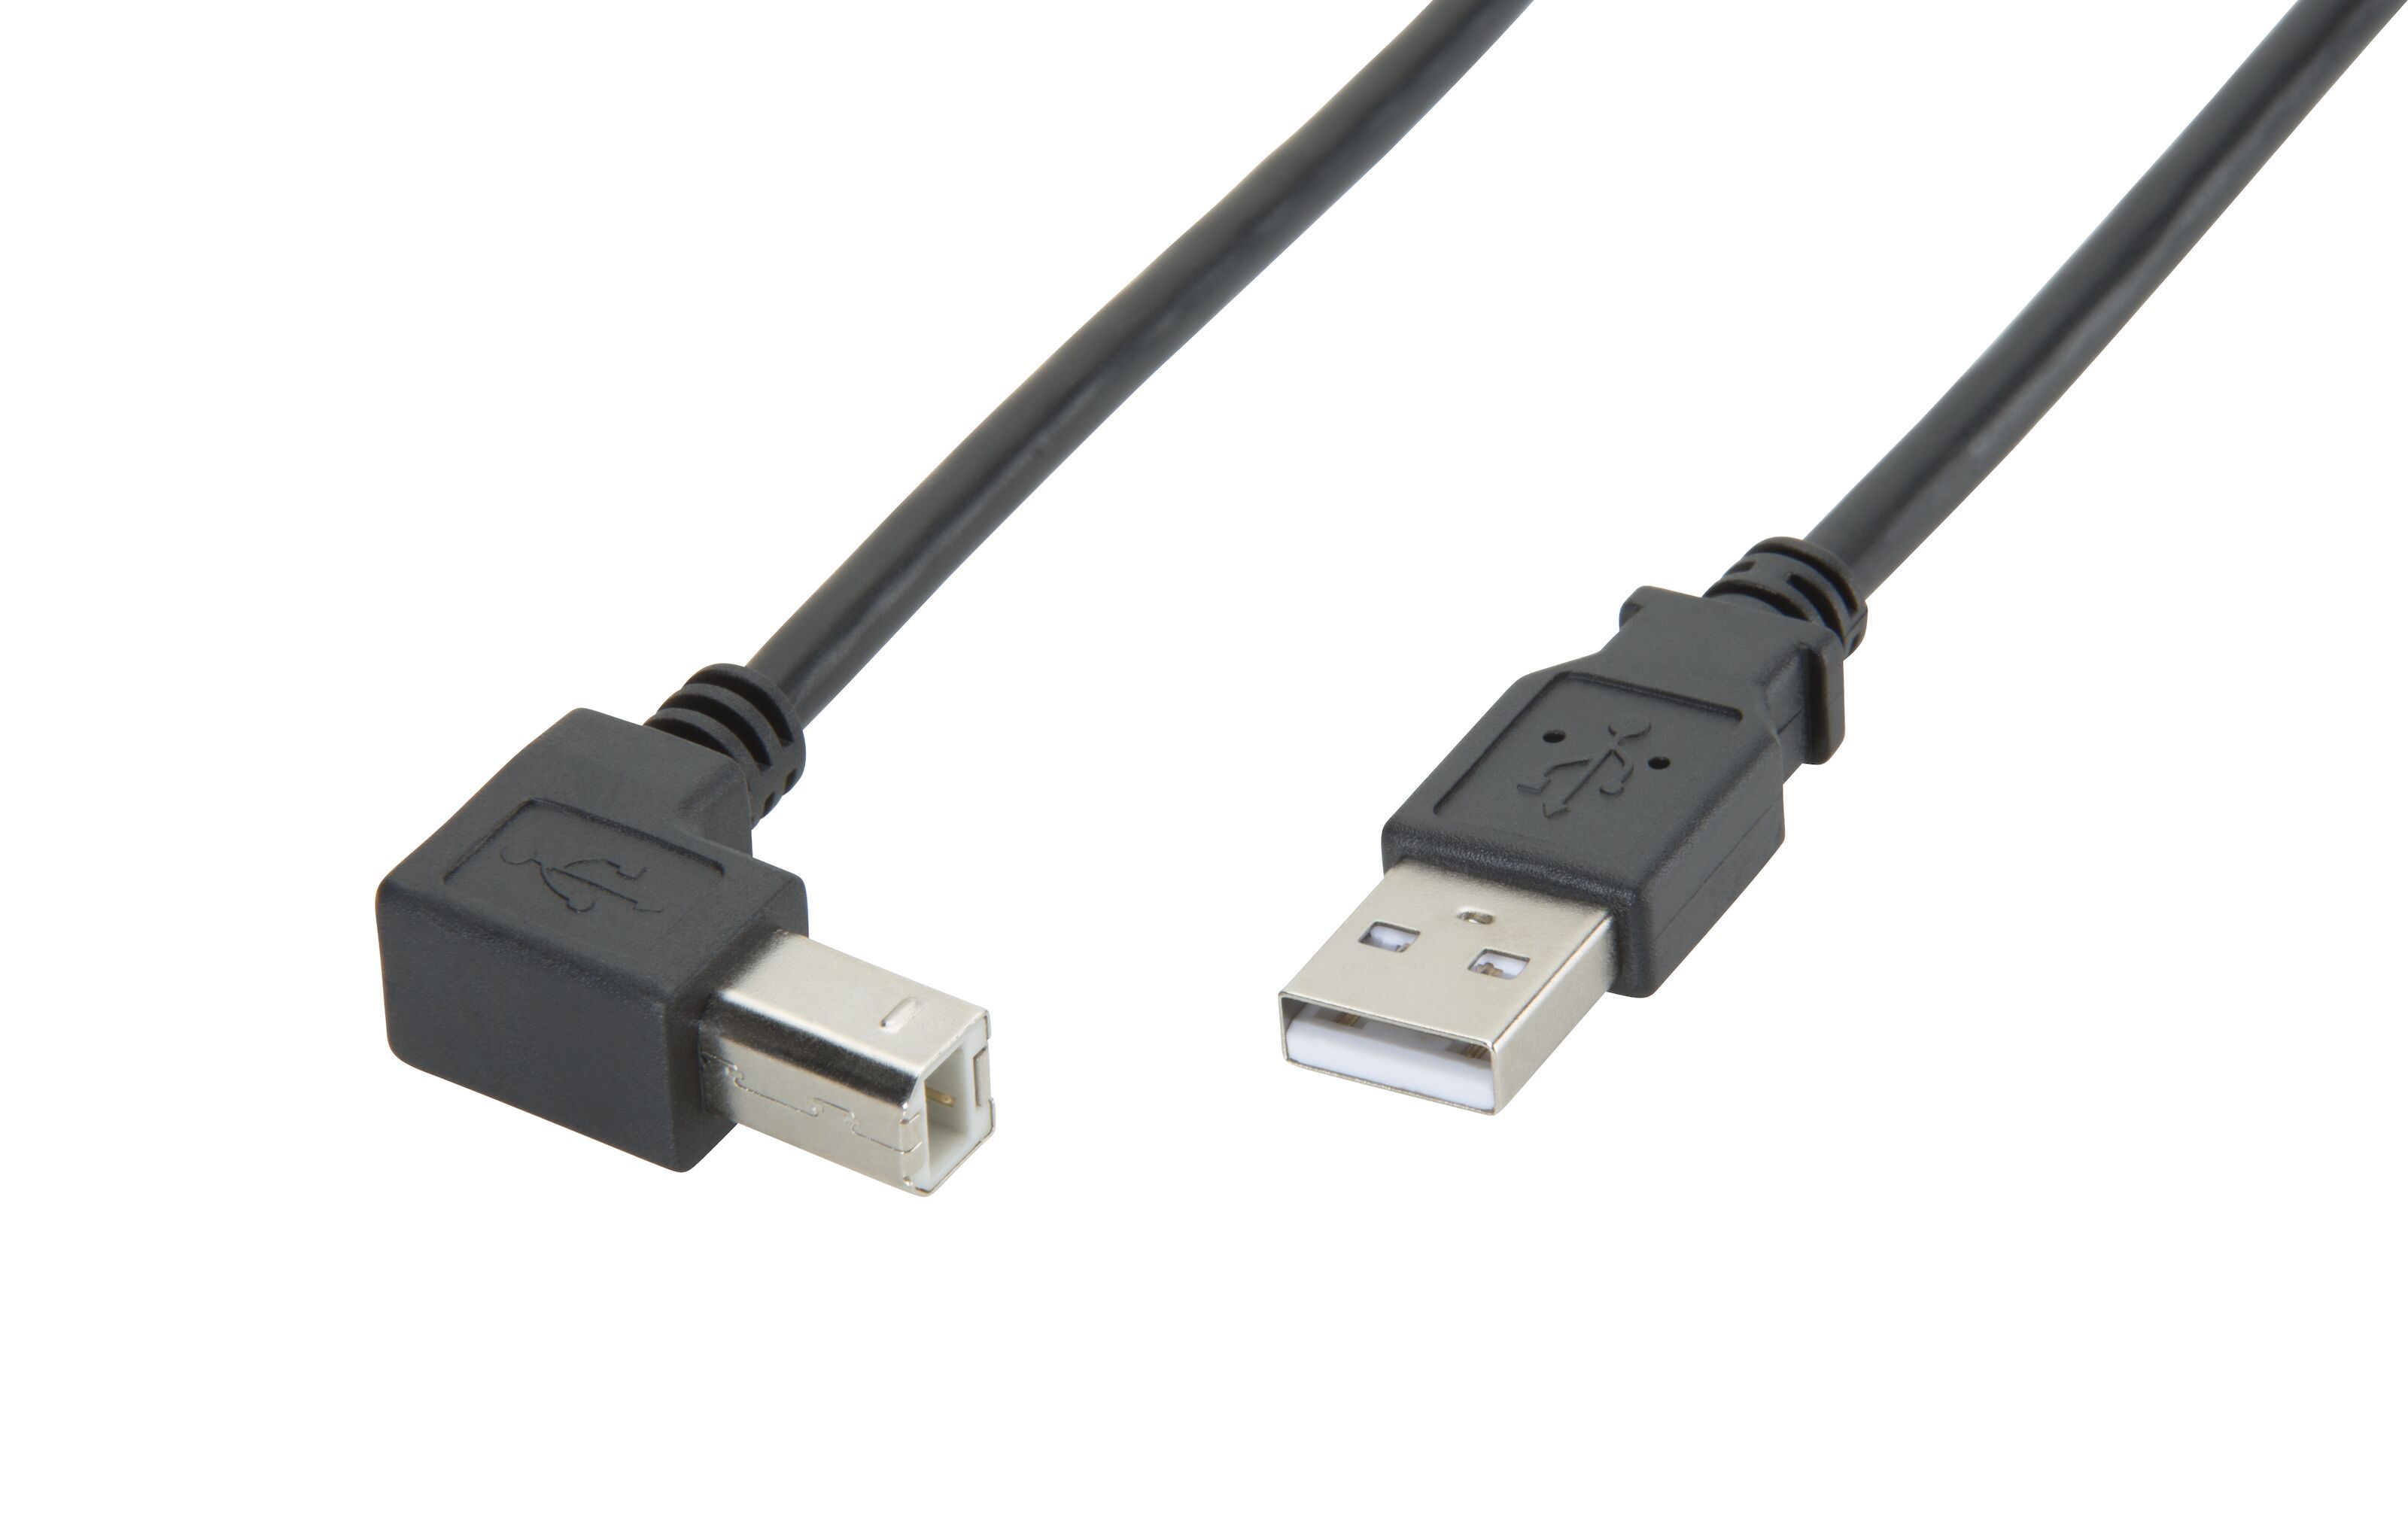 Kantine anbefale dramatisk USB-B-kabel med vinklet kontakt - USB-kabler | Kjell.com